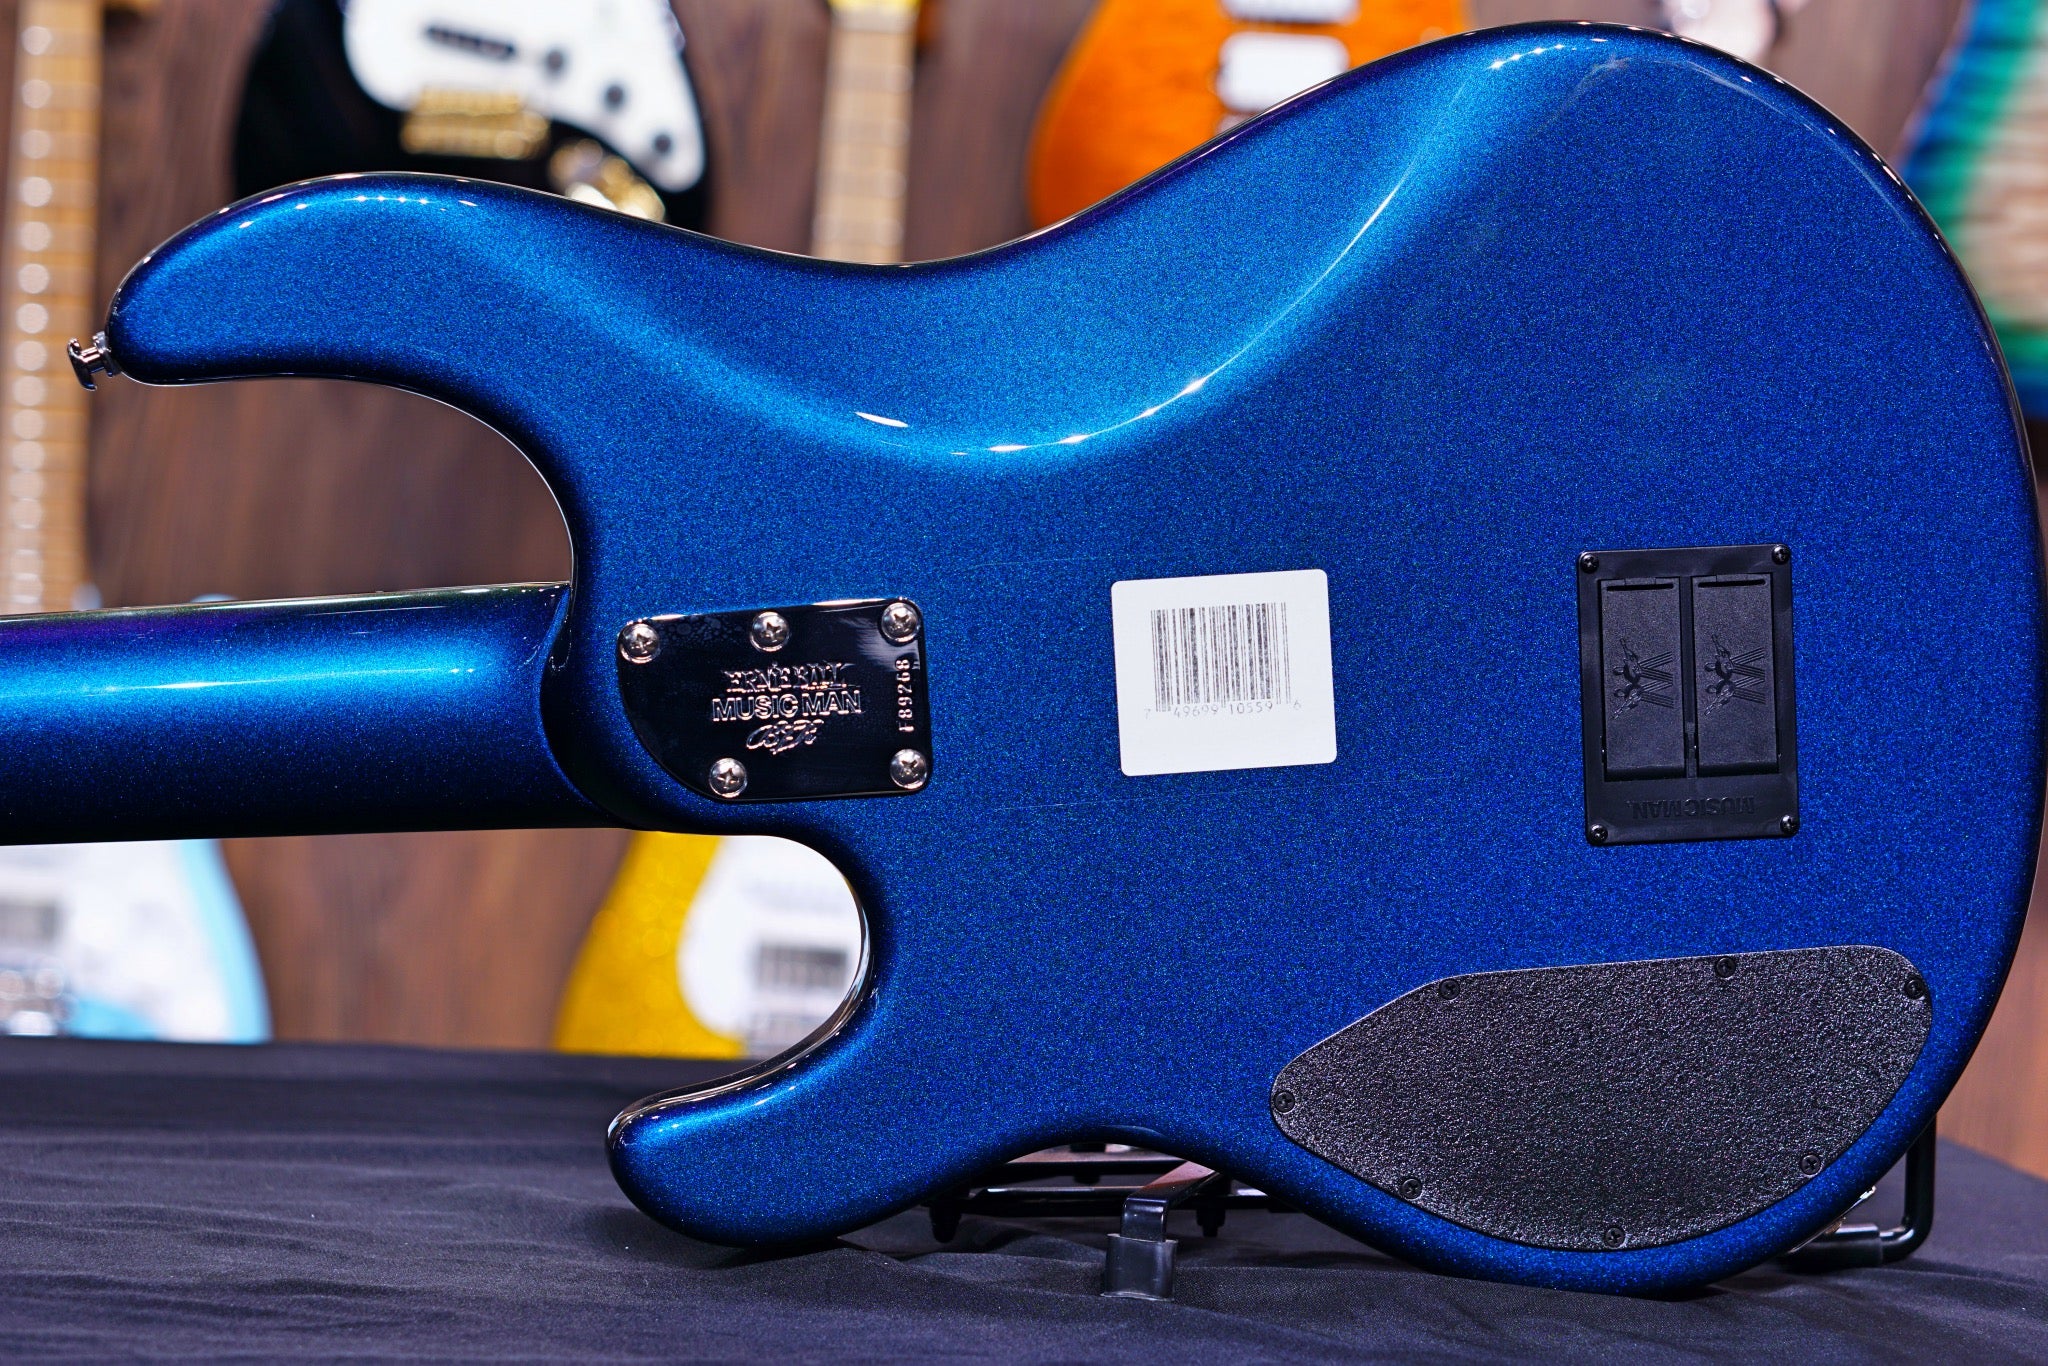 Ernie Ball Music man stingray 5 H kinetic blue F89268 - HIENDGUITAR   Musicman bass